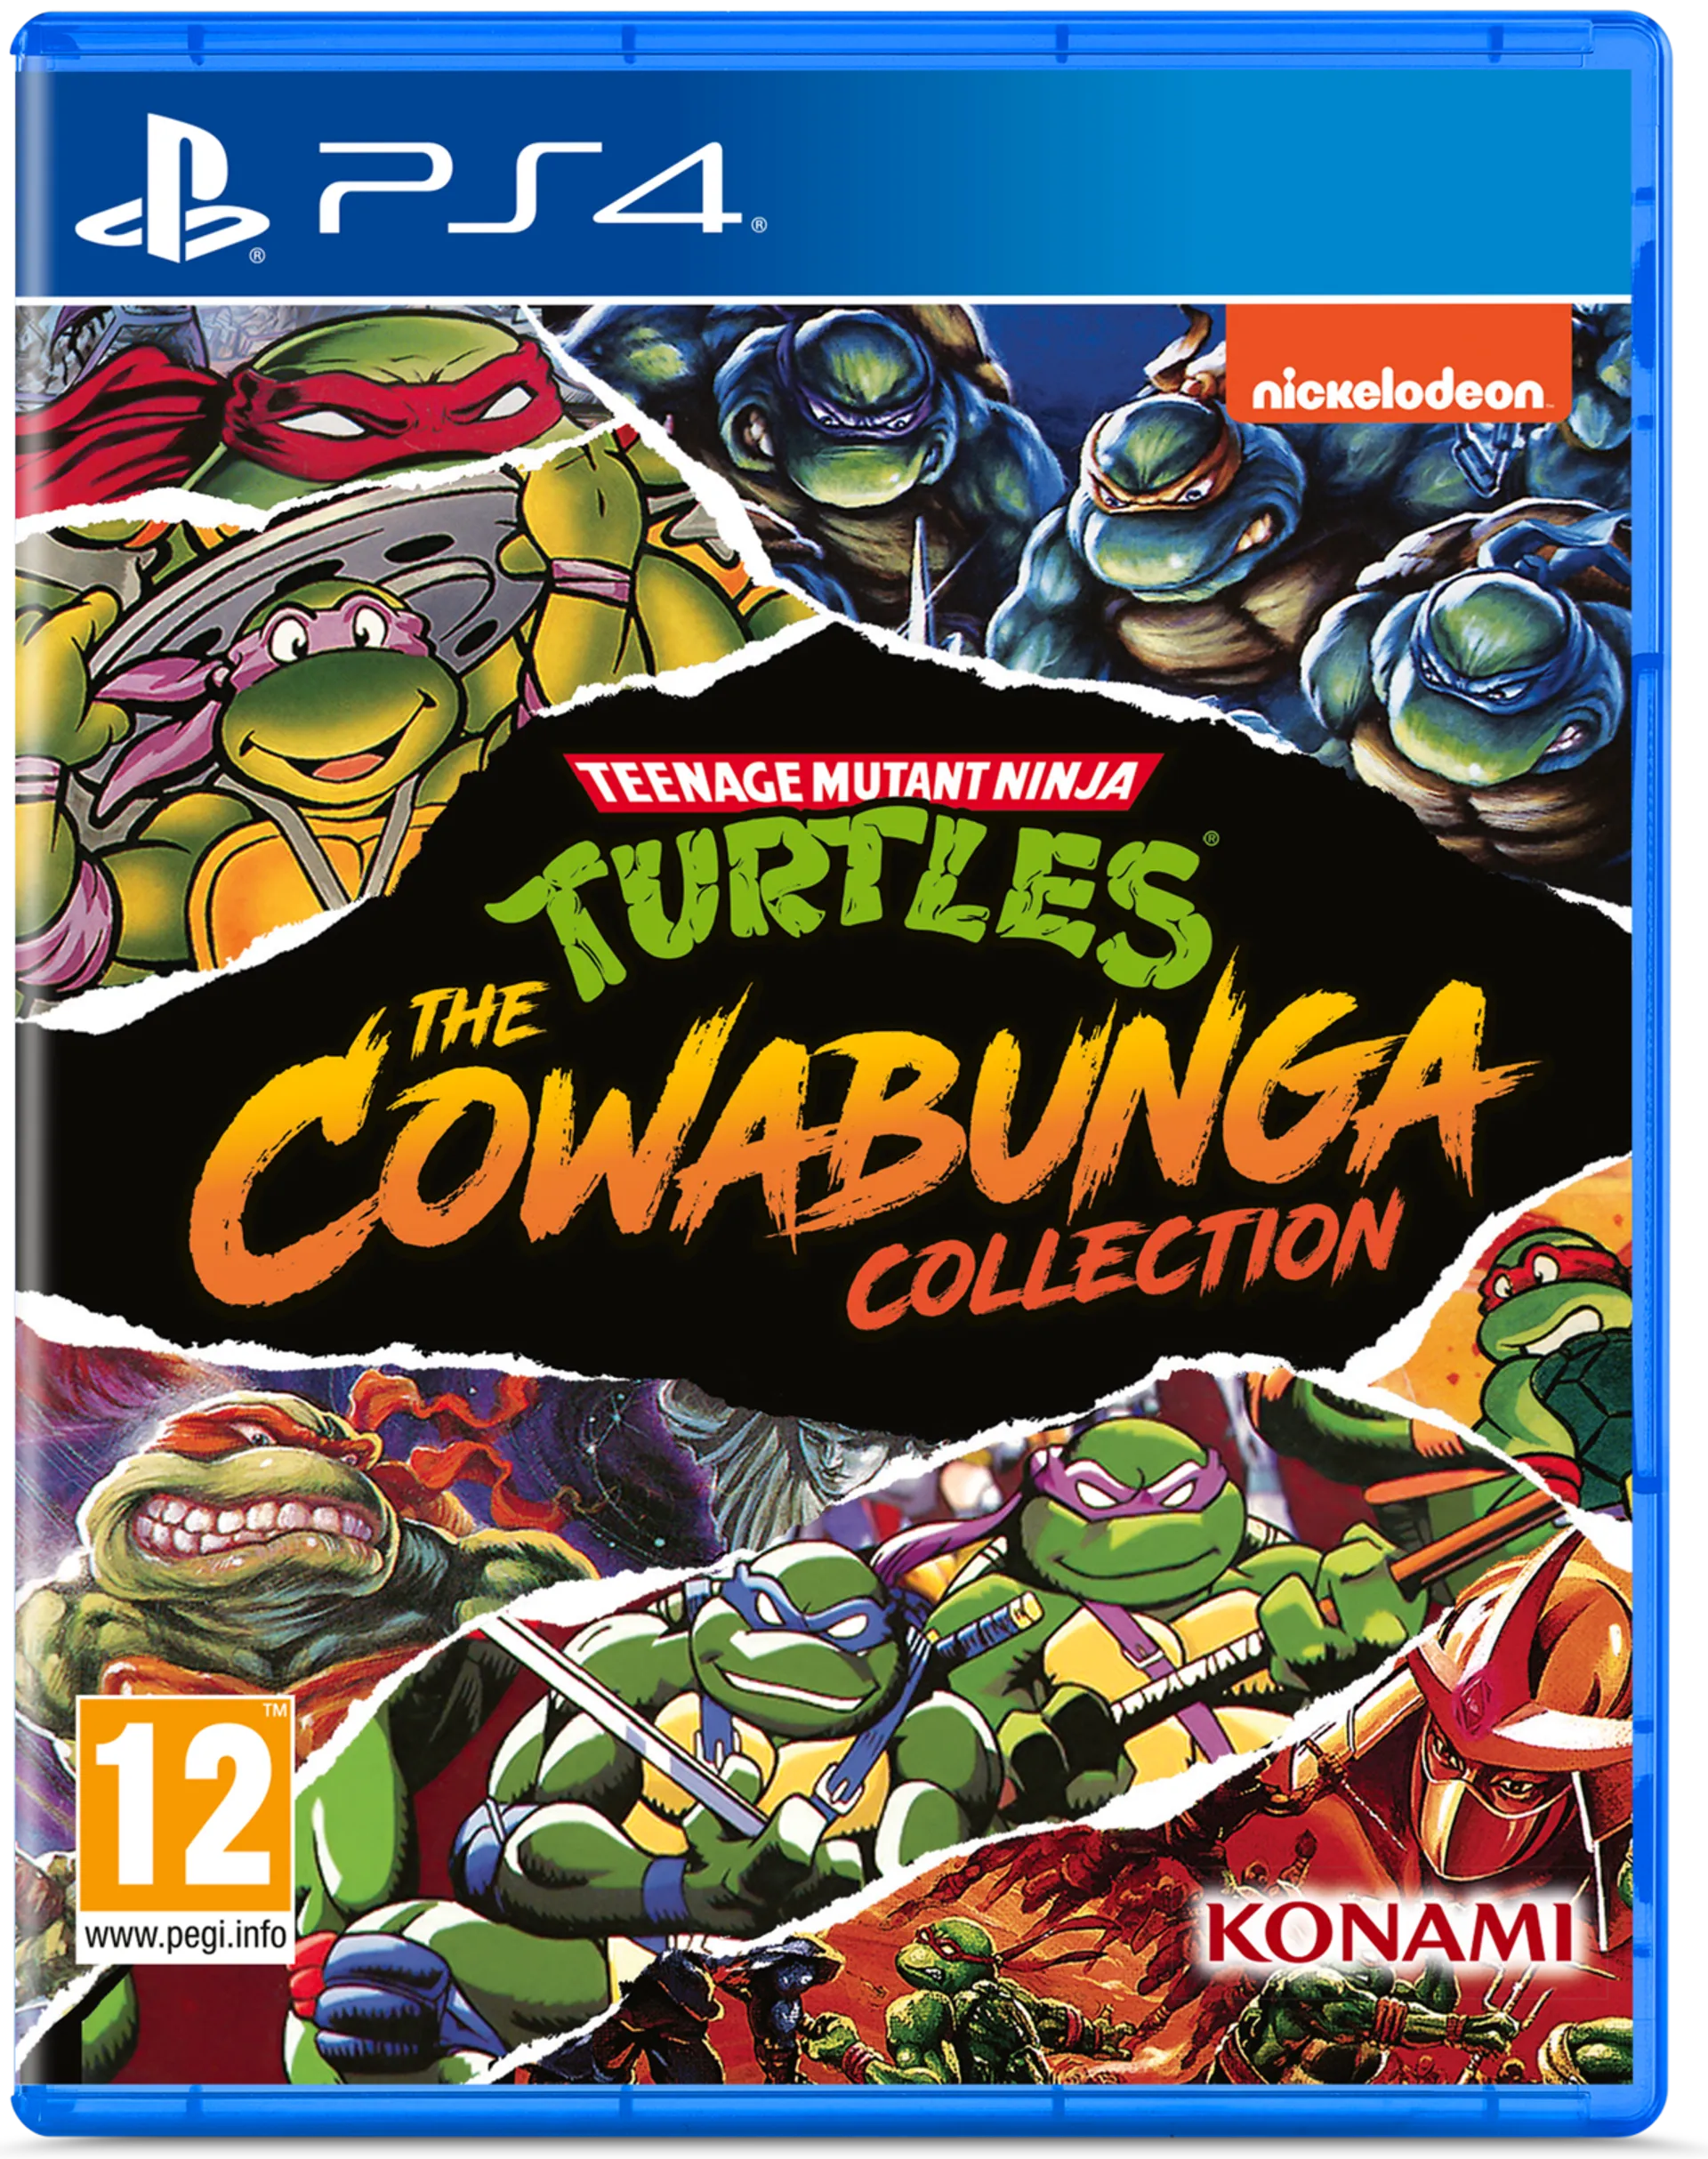 Playstation 4 Teenage Mutant Ninja Turtles: The Cowabunga Edition - 1